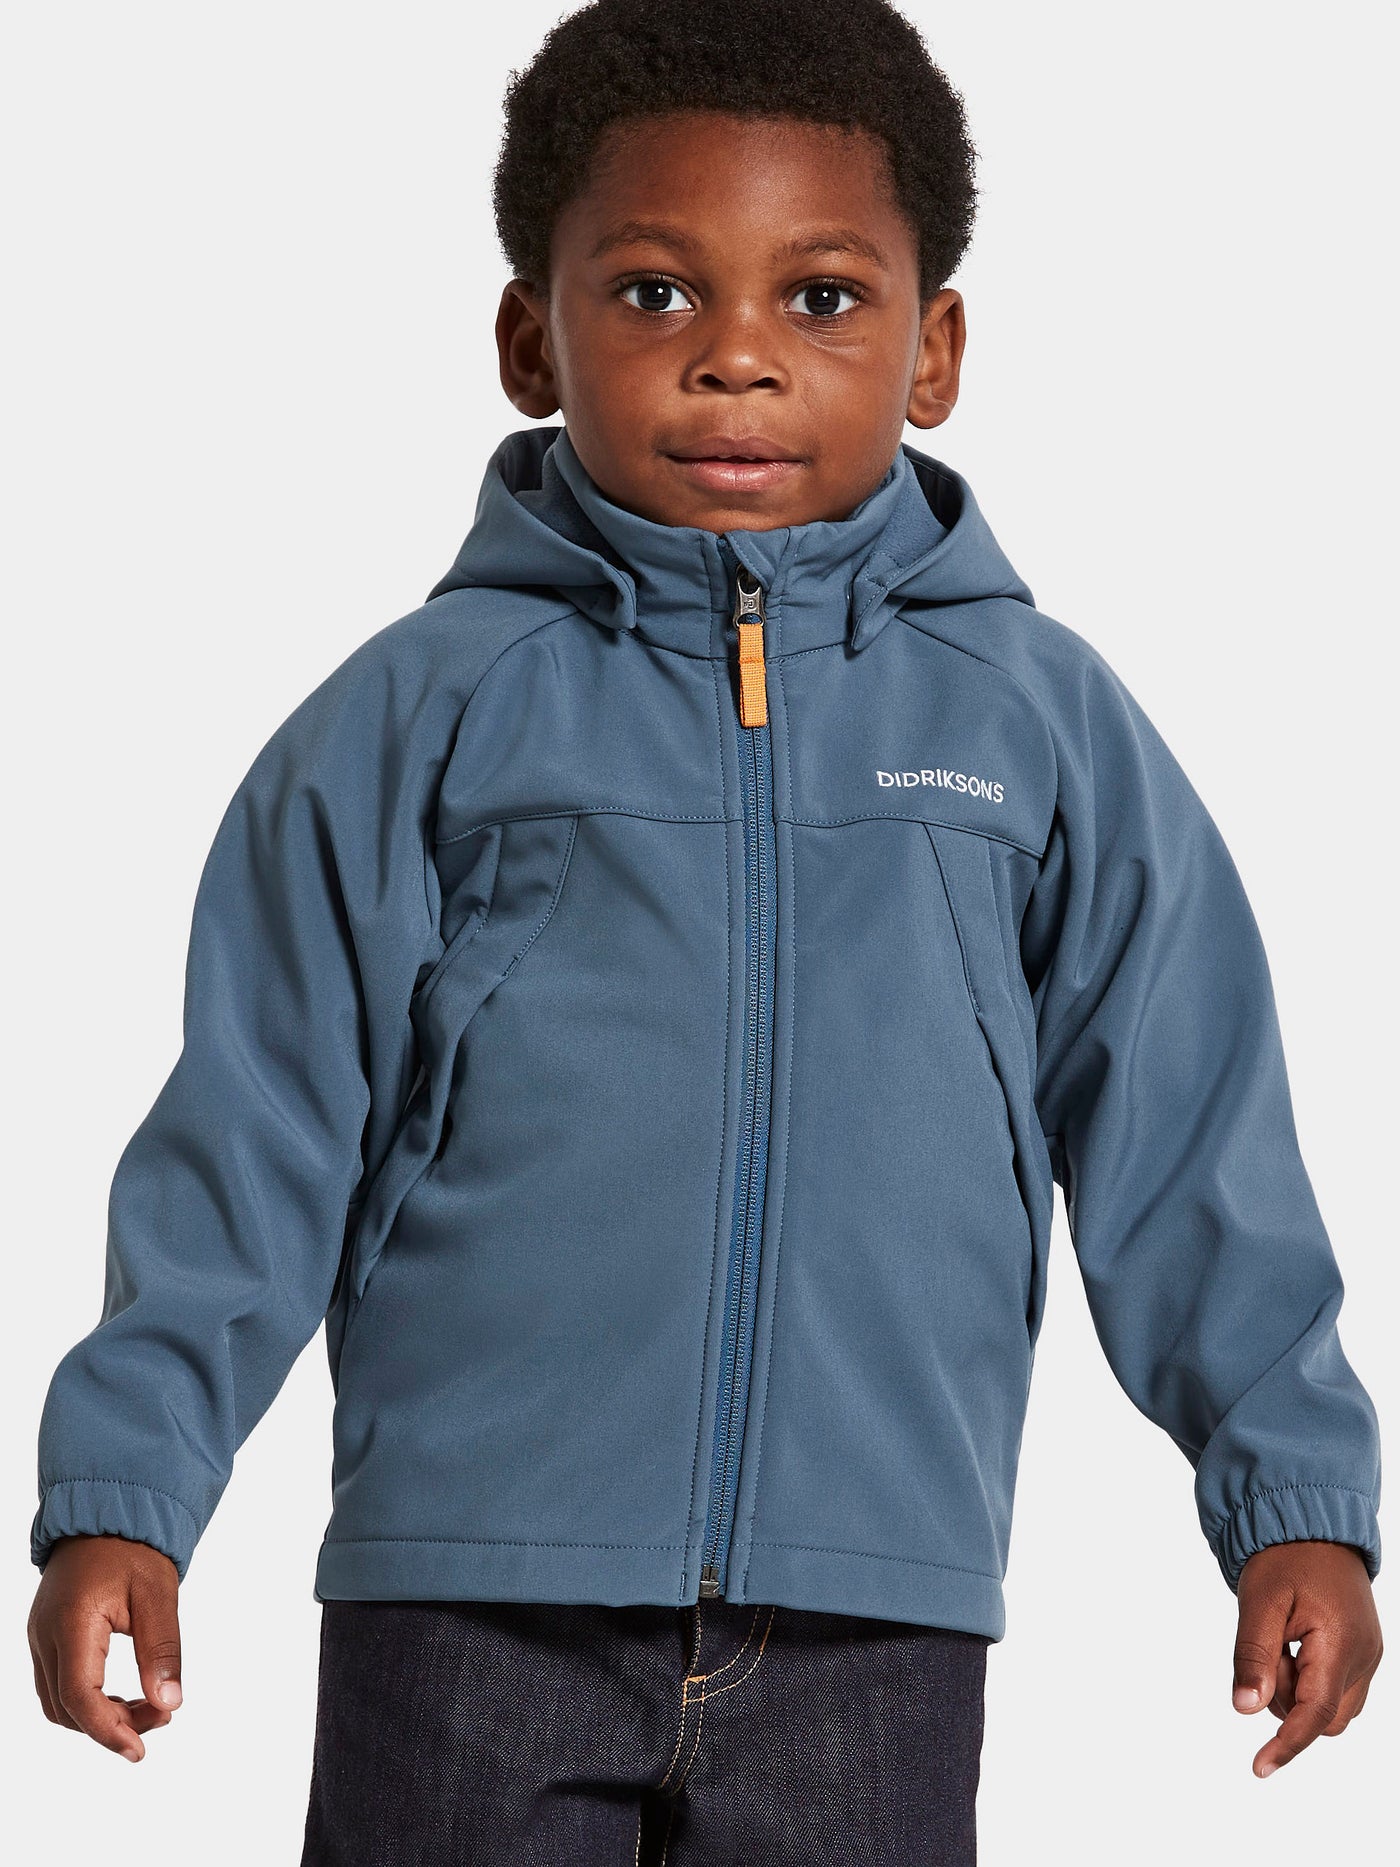 Pojan päällä Didriksonsin Dellen lasten sininen softshell-takki läheltä kuvattuna